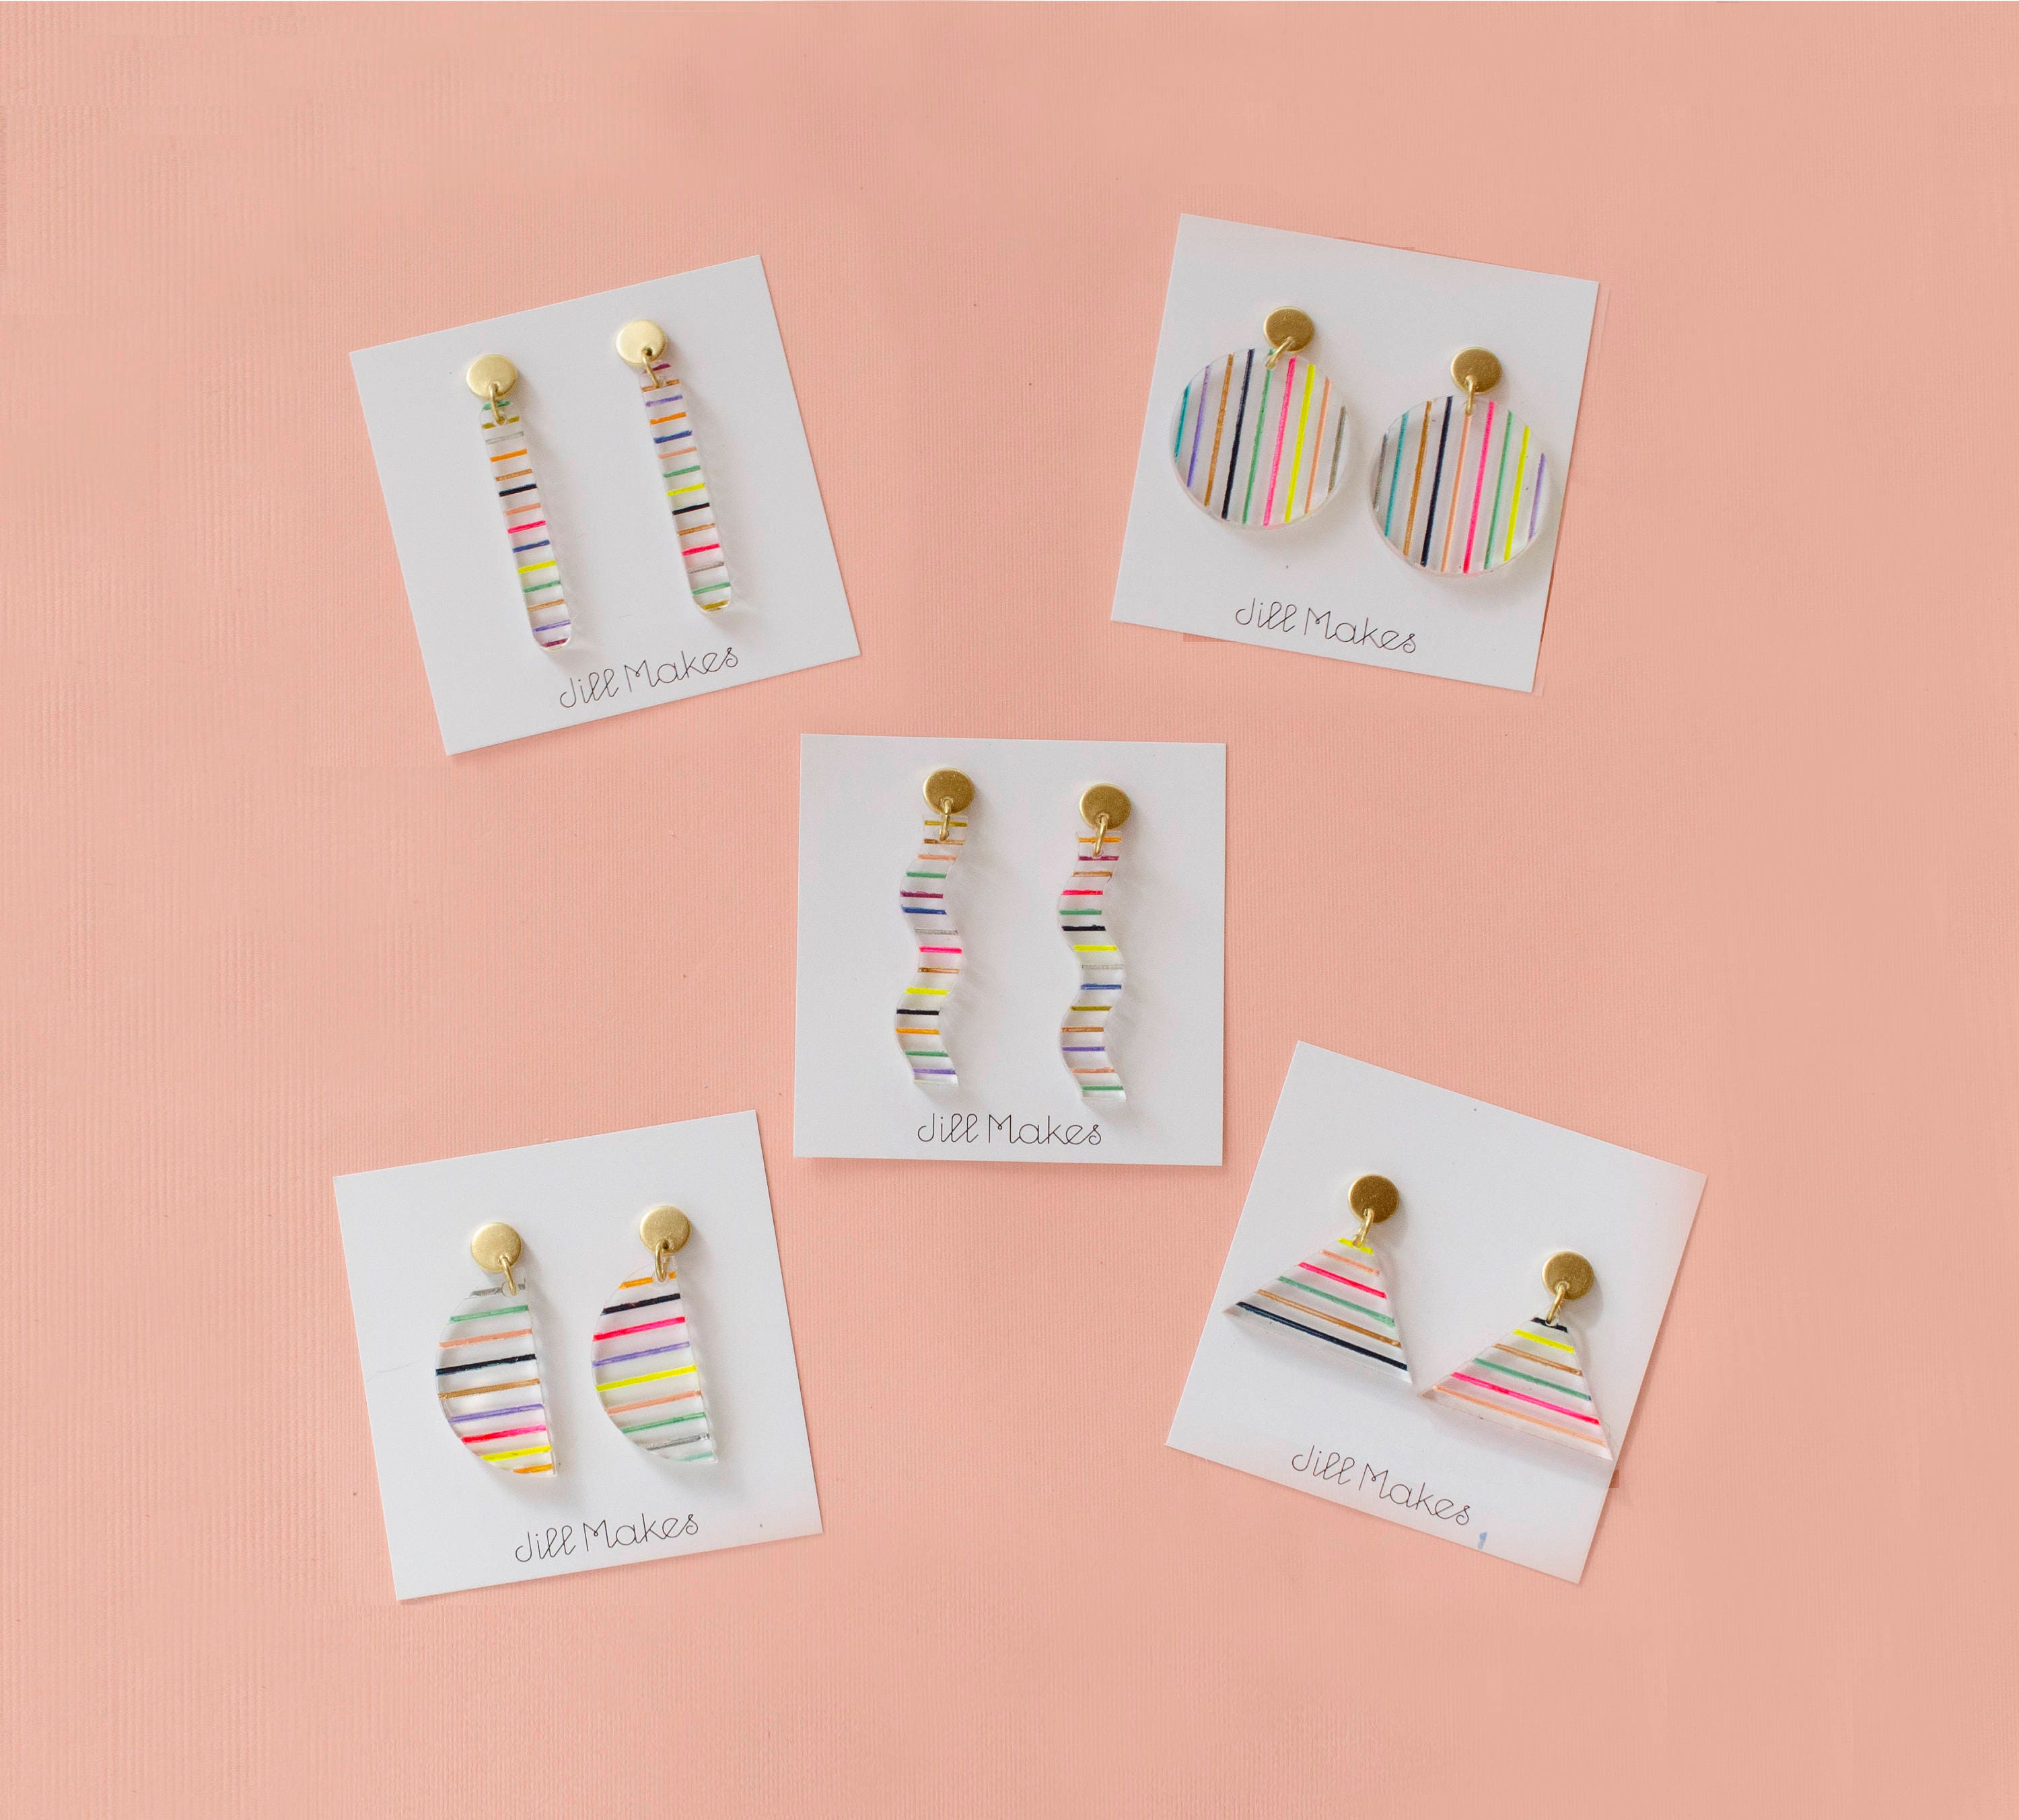 Colorful dangle earrings, geometric statement earrings, pride earrings –  jillmakes